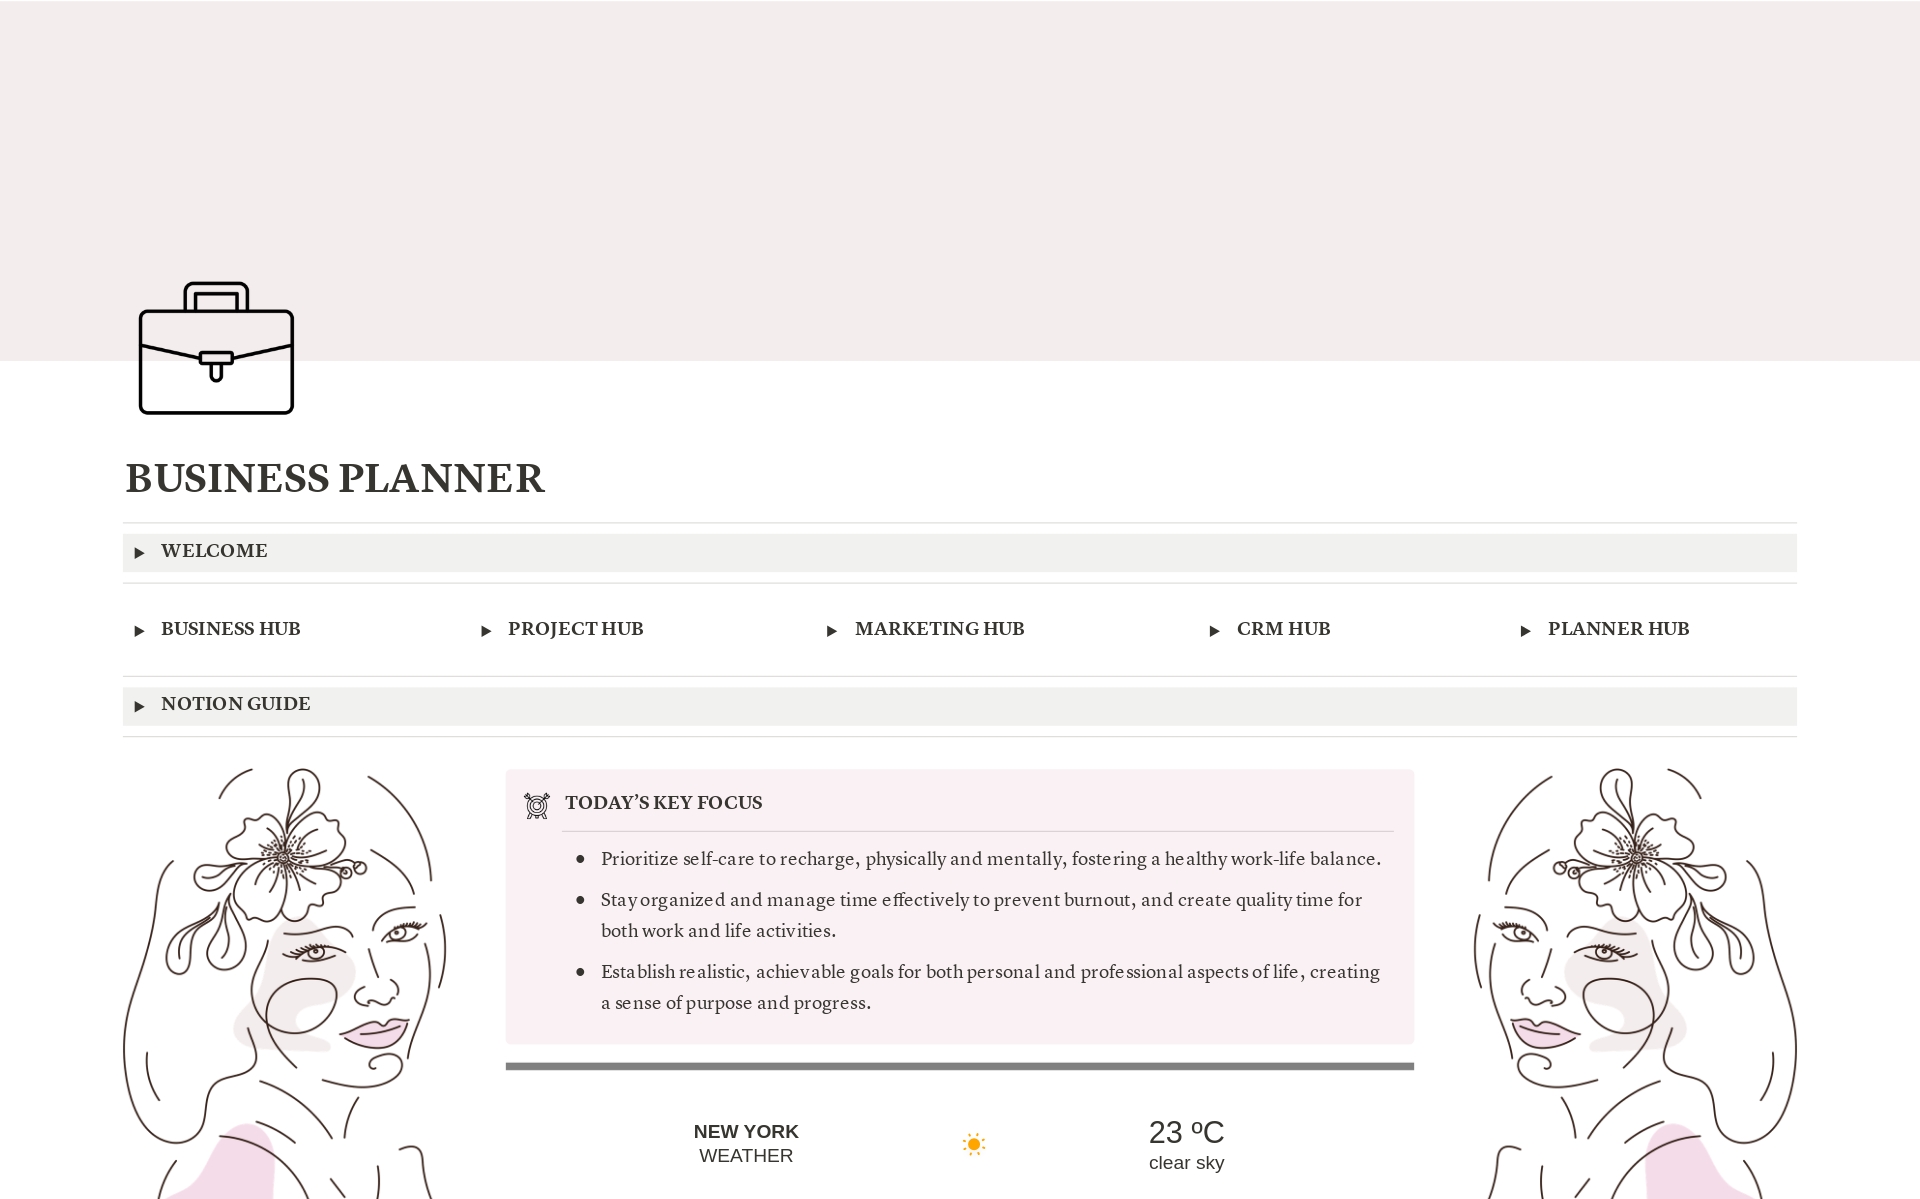 Business Planner - Pinkのテンプレートのプレビュー